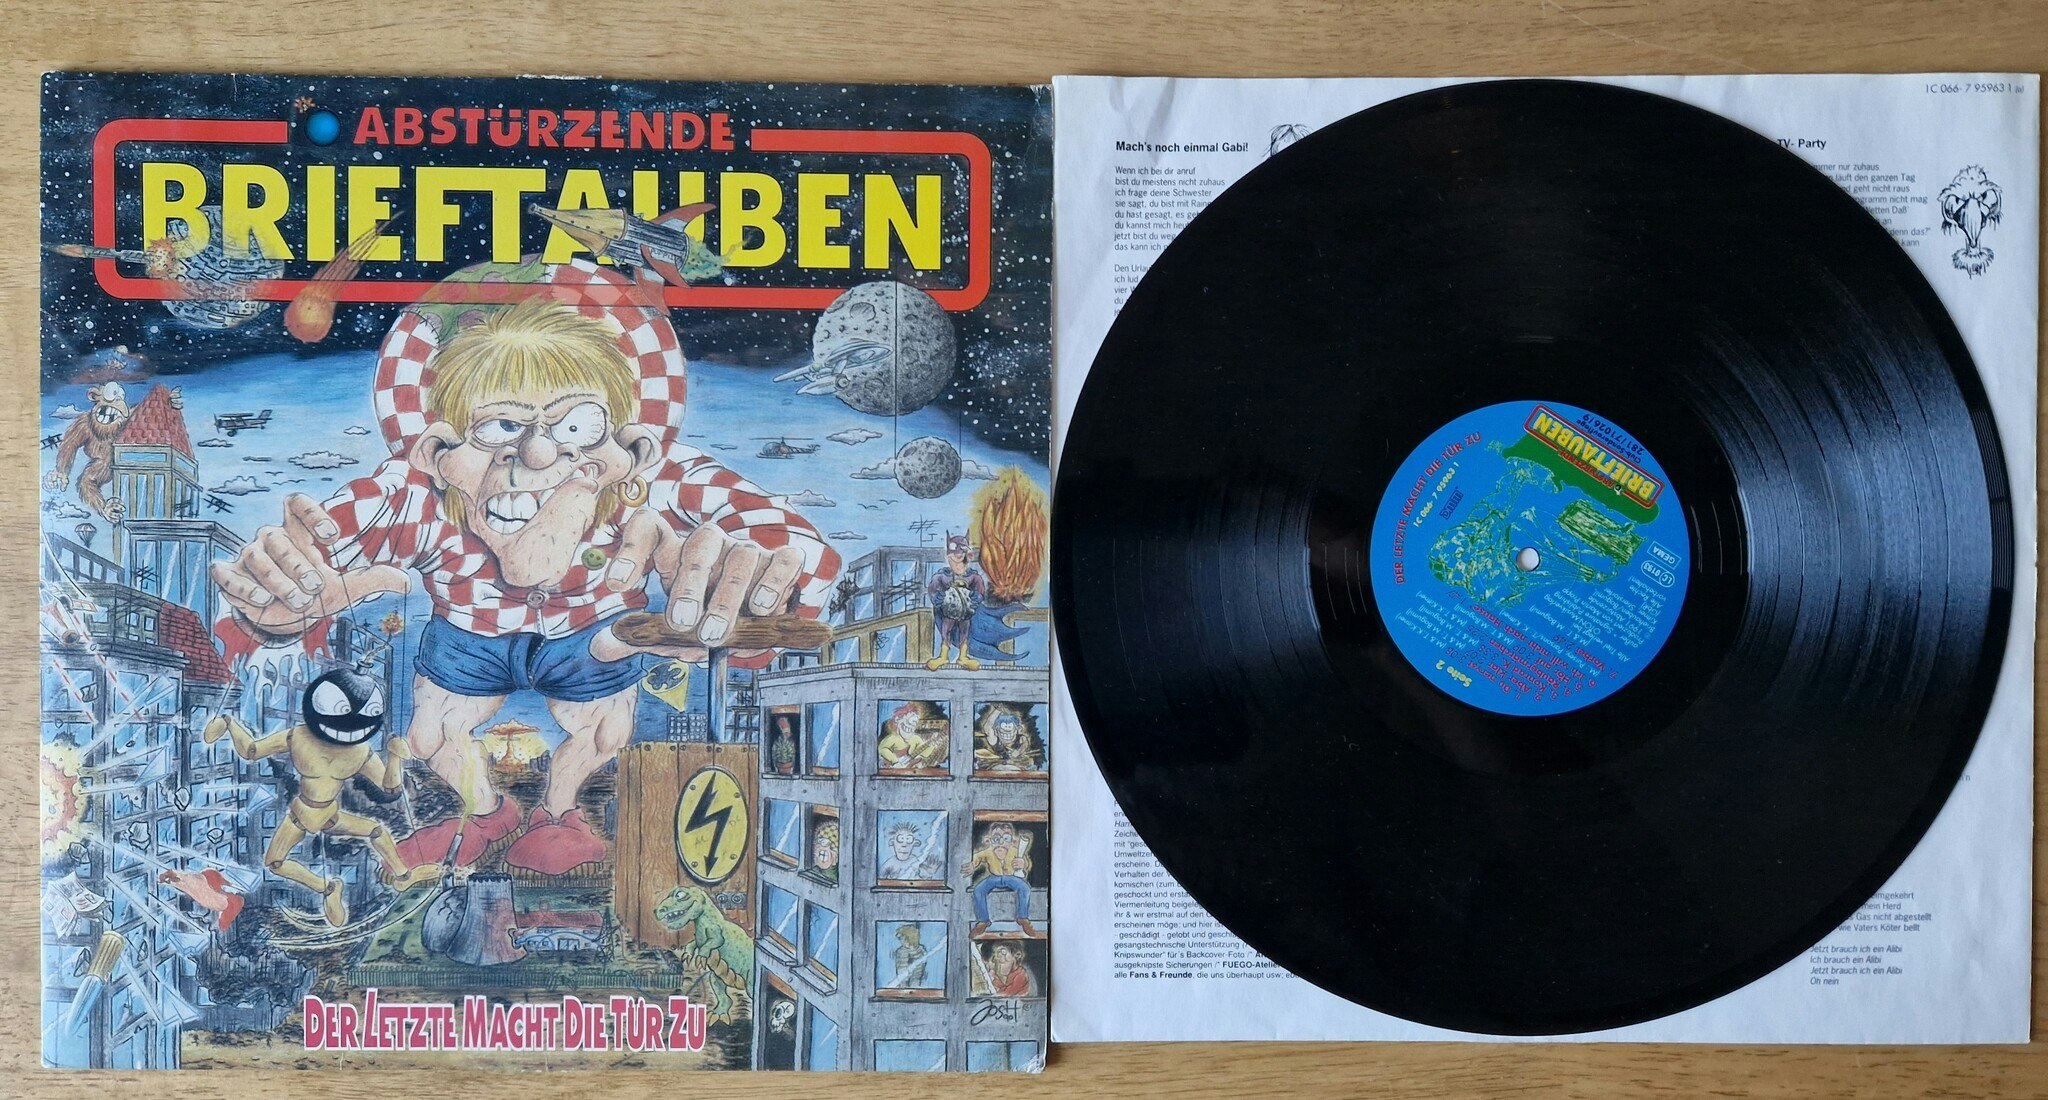 Abstürzende Brieftauben, Der letzte macht die tür zu. Vinyl LP